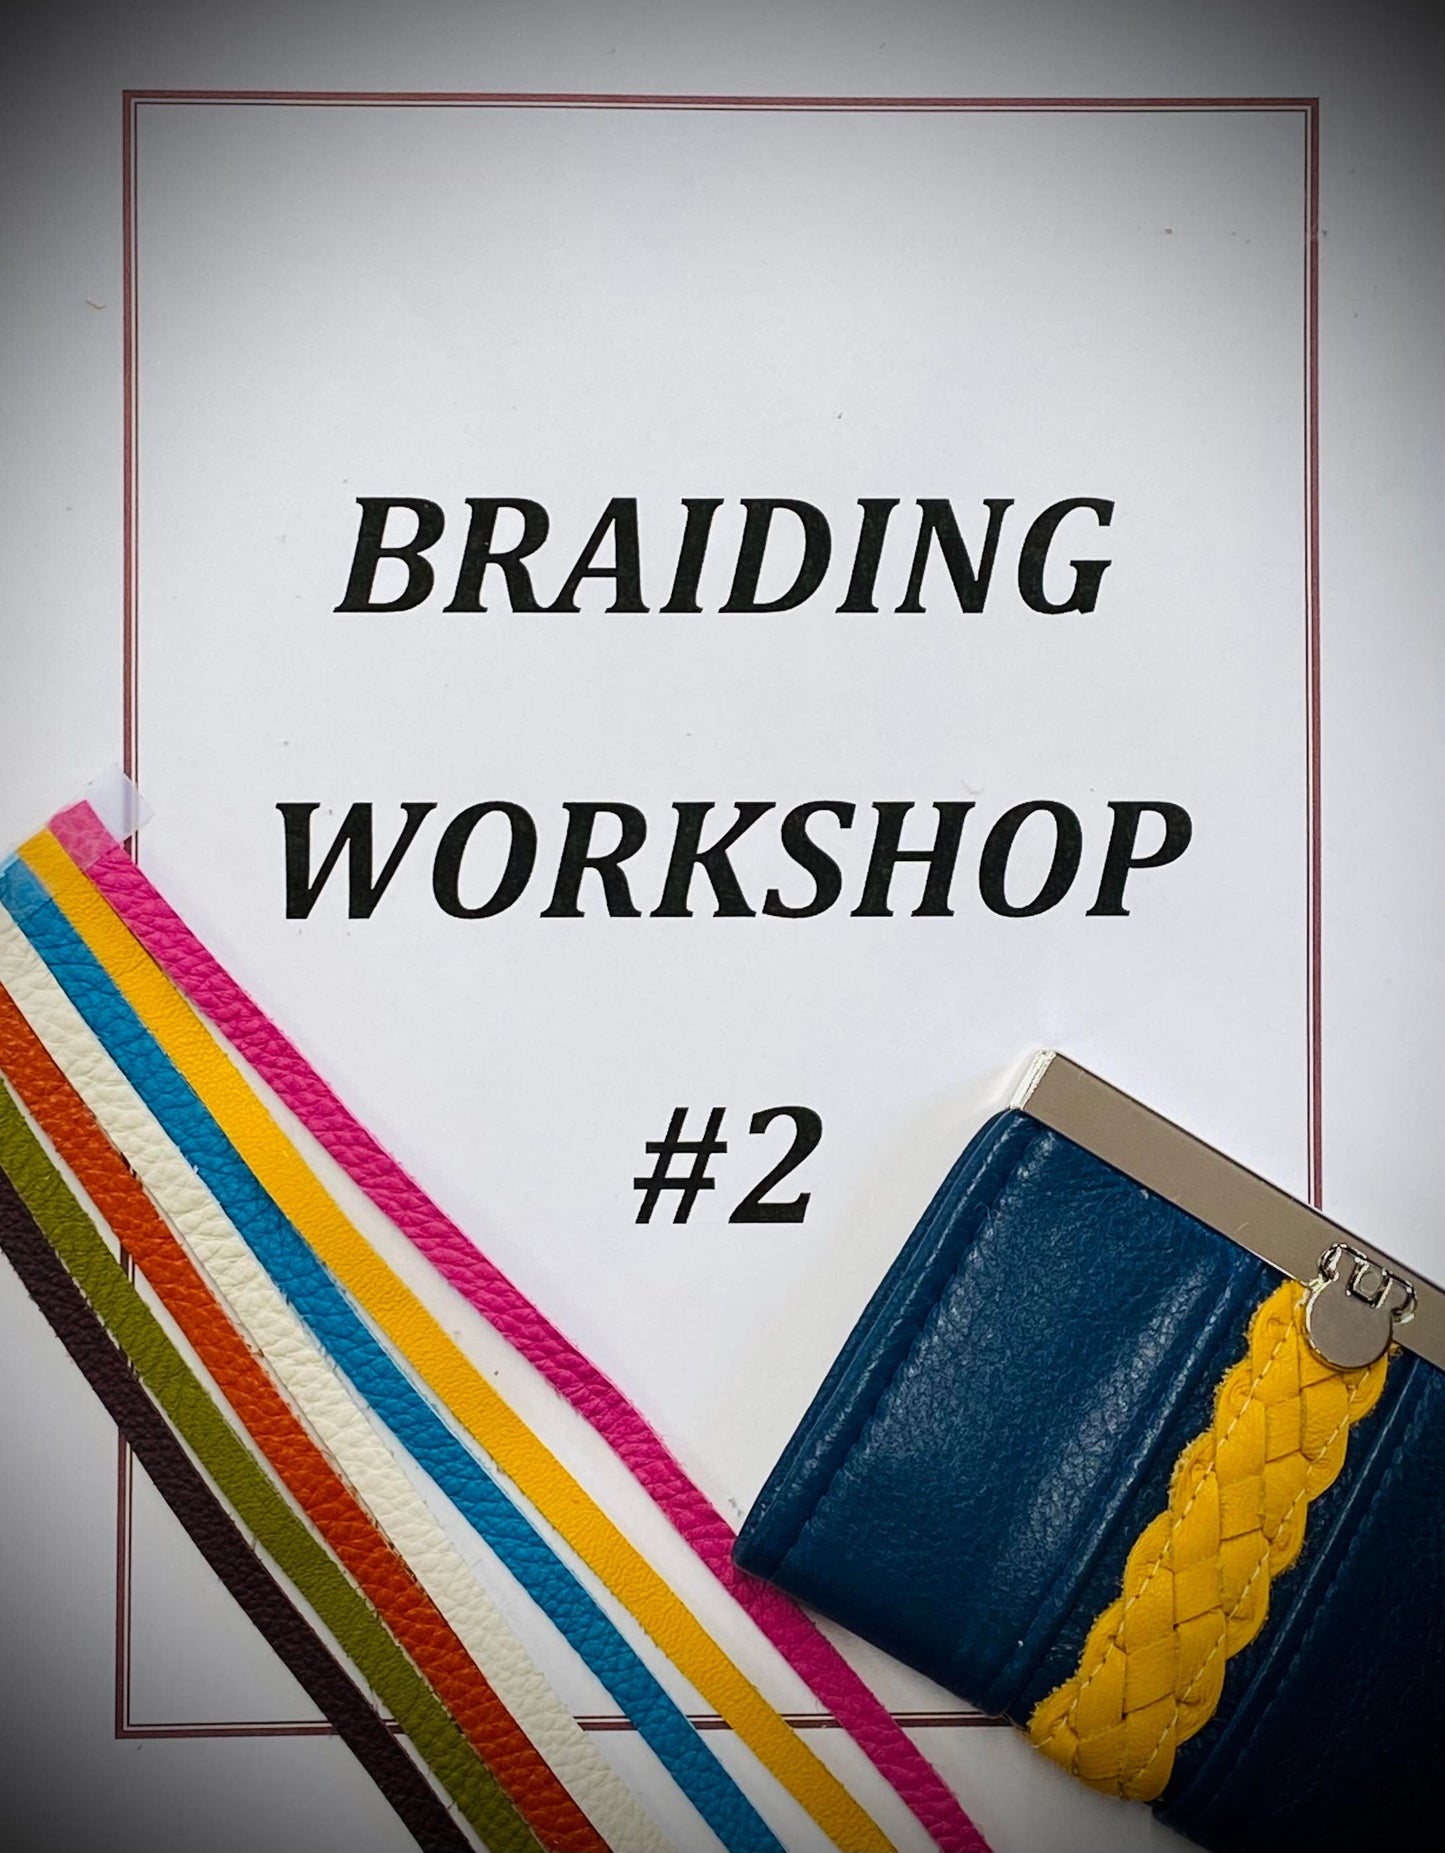 Braiding Techniques Workshop #2- Session 4, Video 3